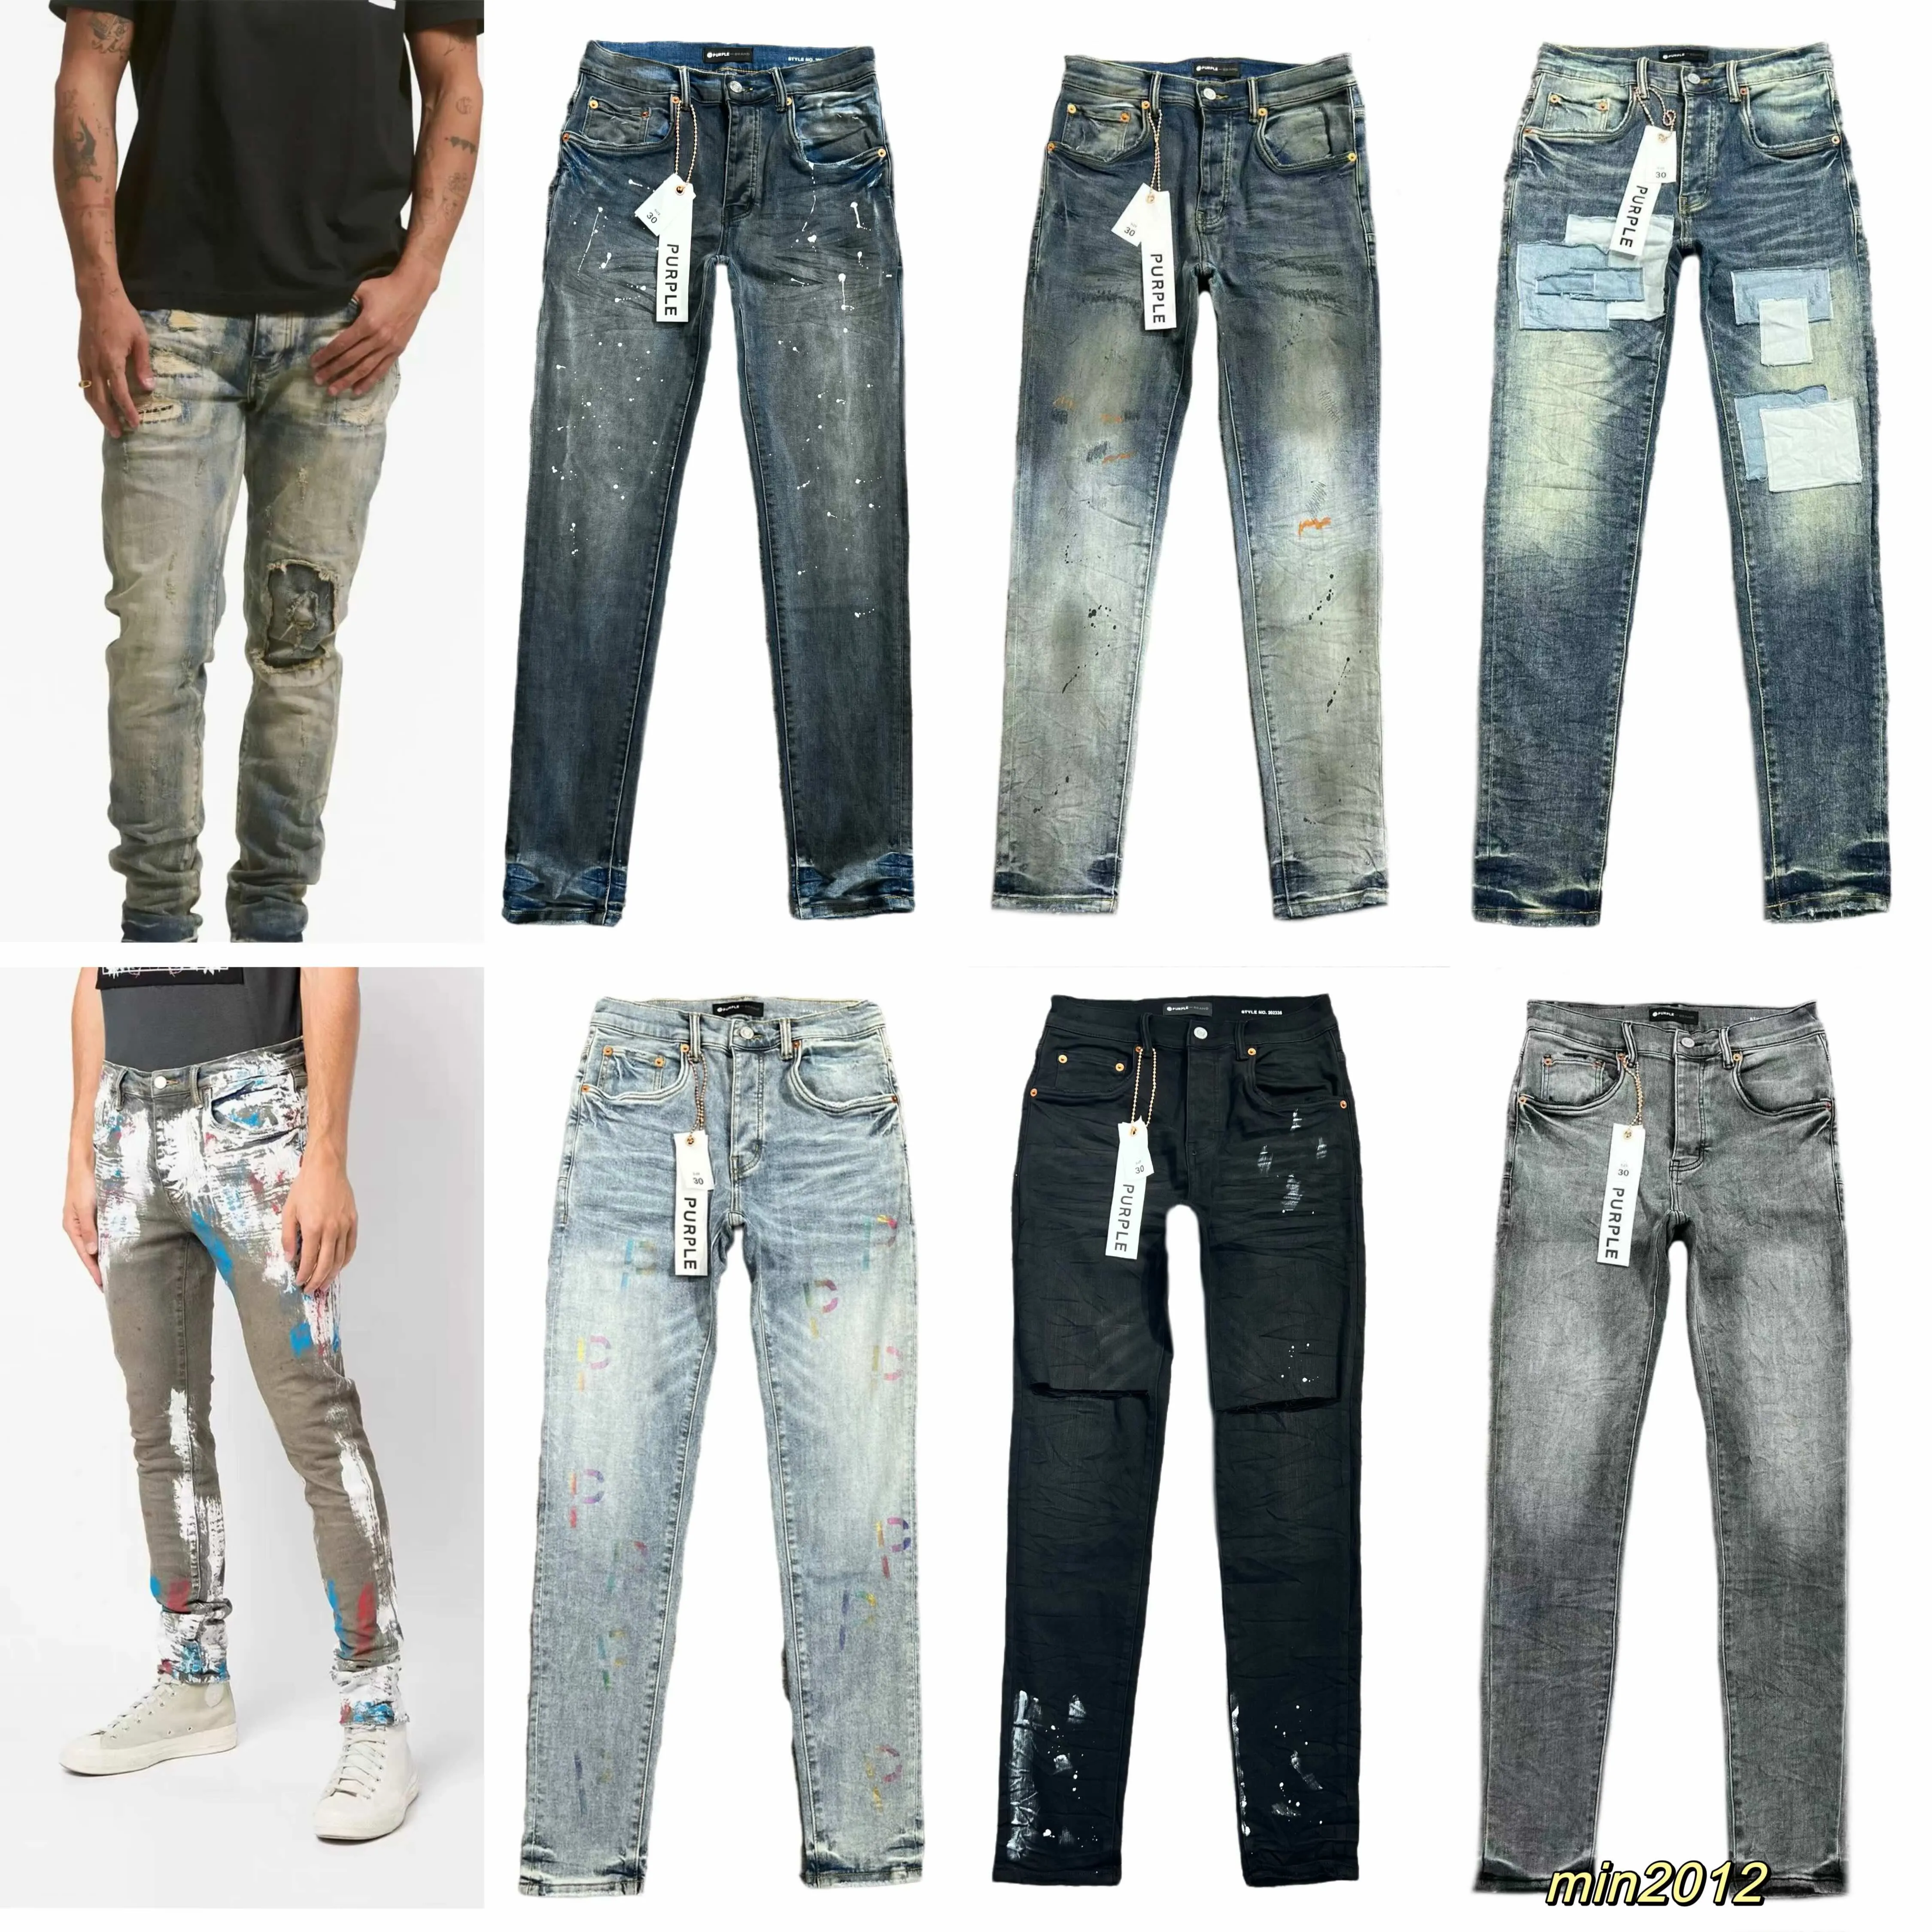 Фиолетовые брендовые джинсы. Новый выпуск. Дизайнерские джинсы ksubi. Оригинальные повседневные джинсы Medn Designer Antiaging Slim Fit.